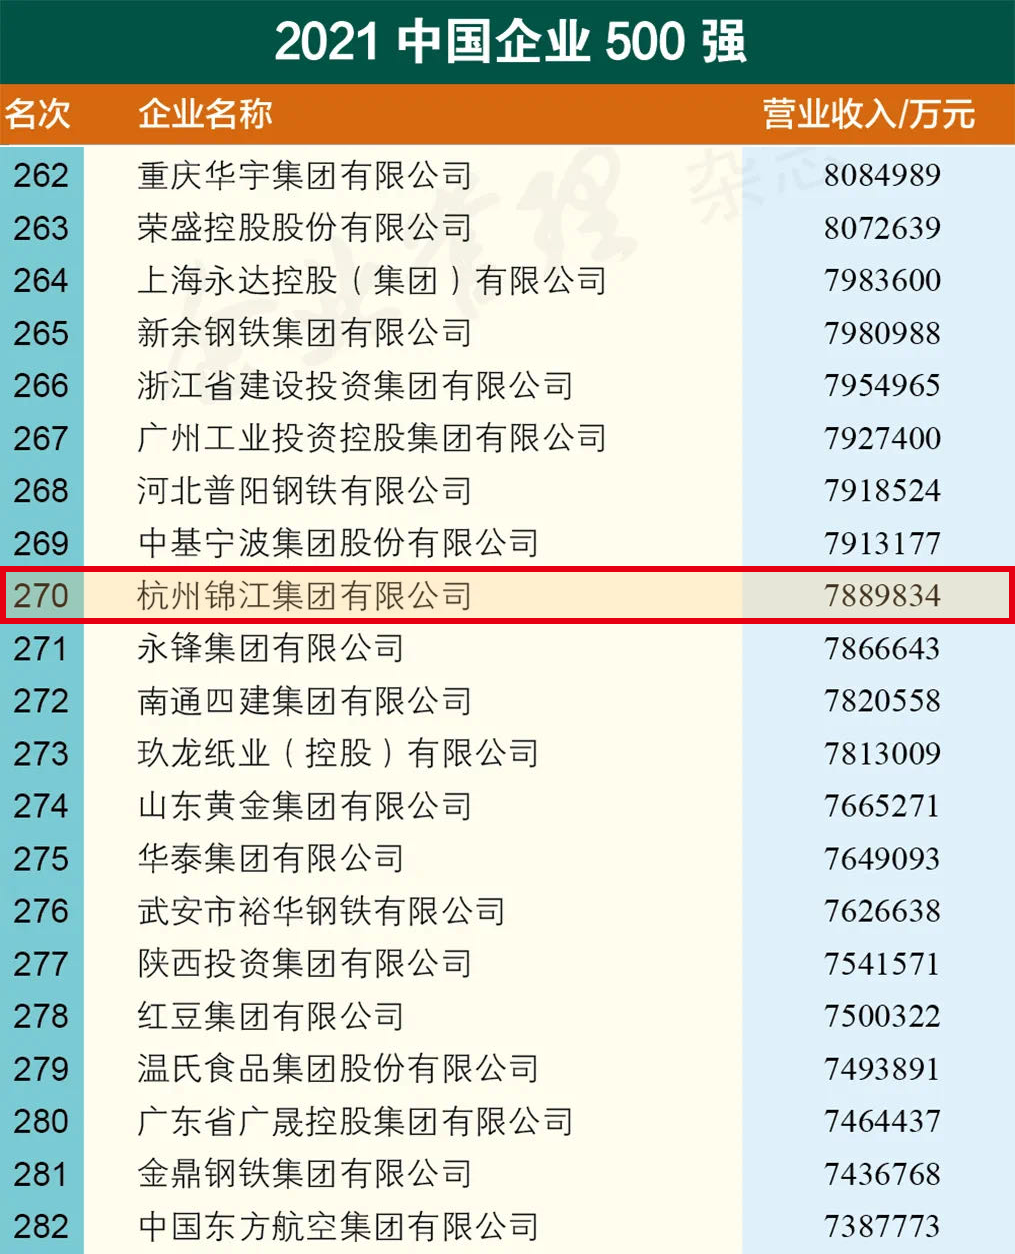 杭州錦江集團 榮登 “2021年中國企業500強、制造業500強榜單”及“2021年中國民營企業500強、制造業500強“榜單